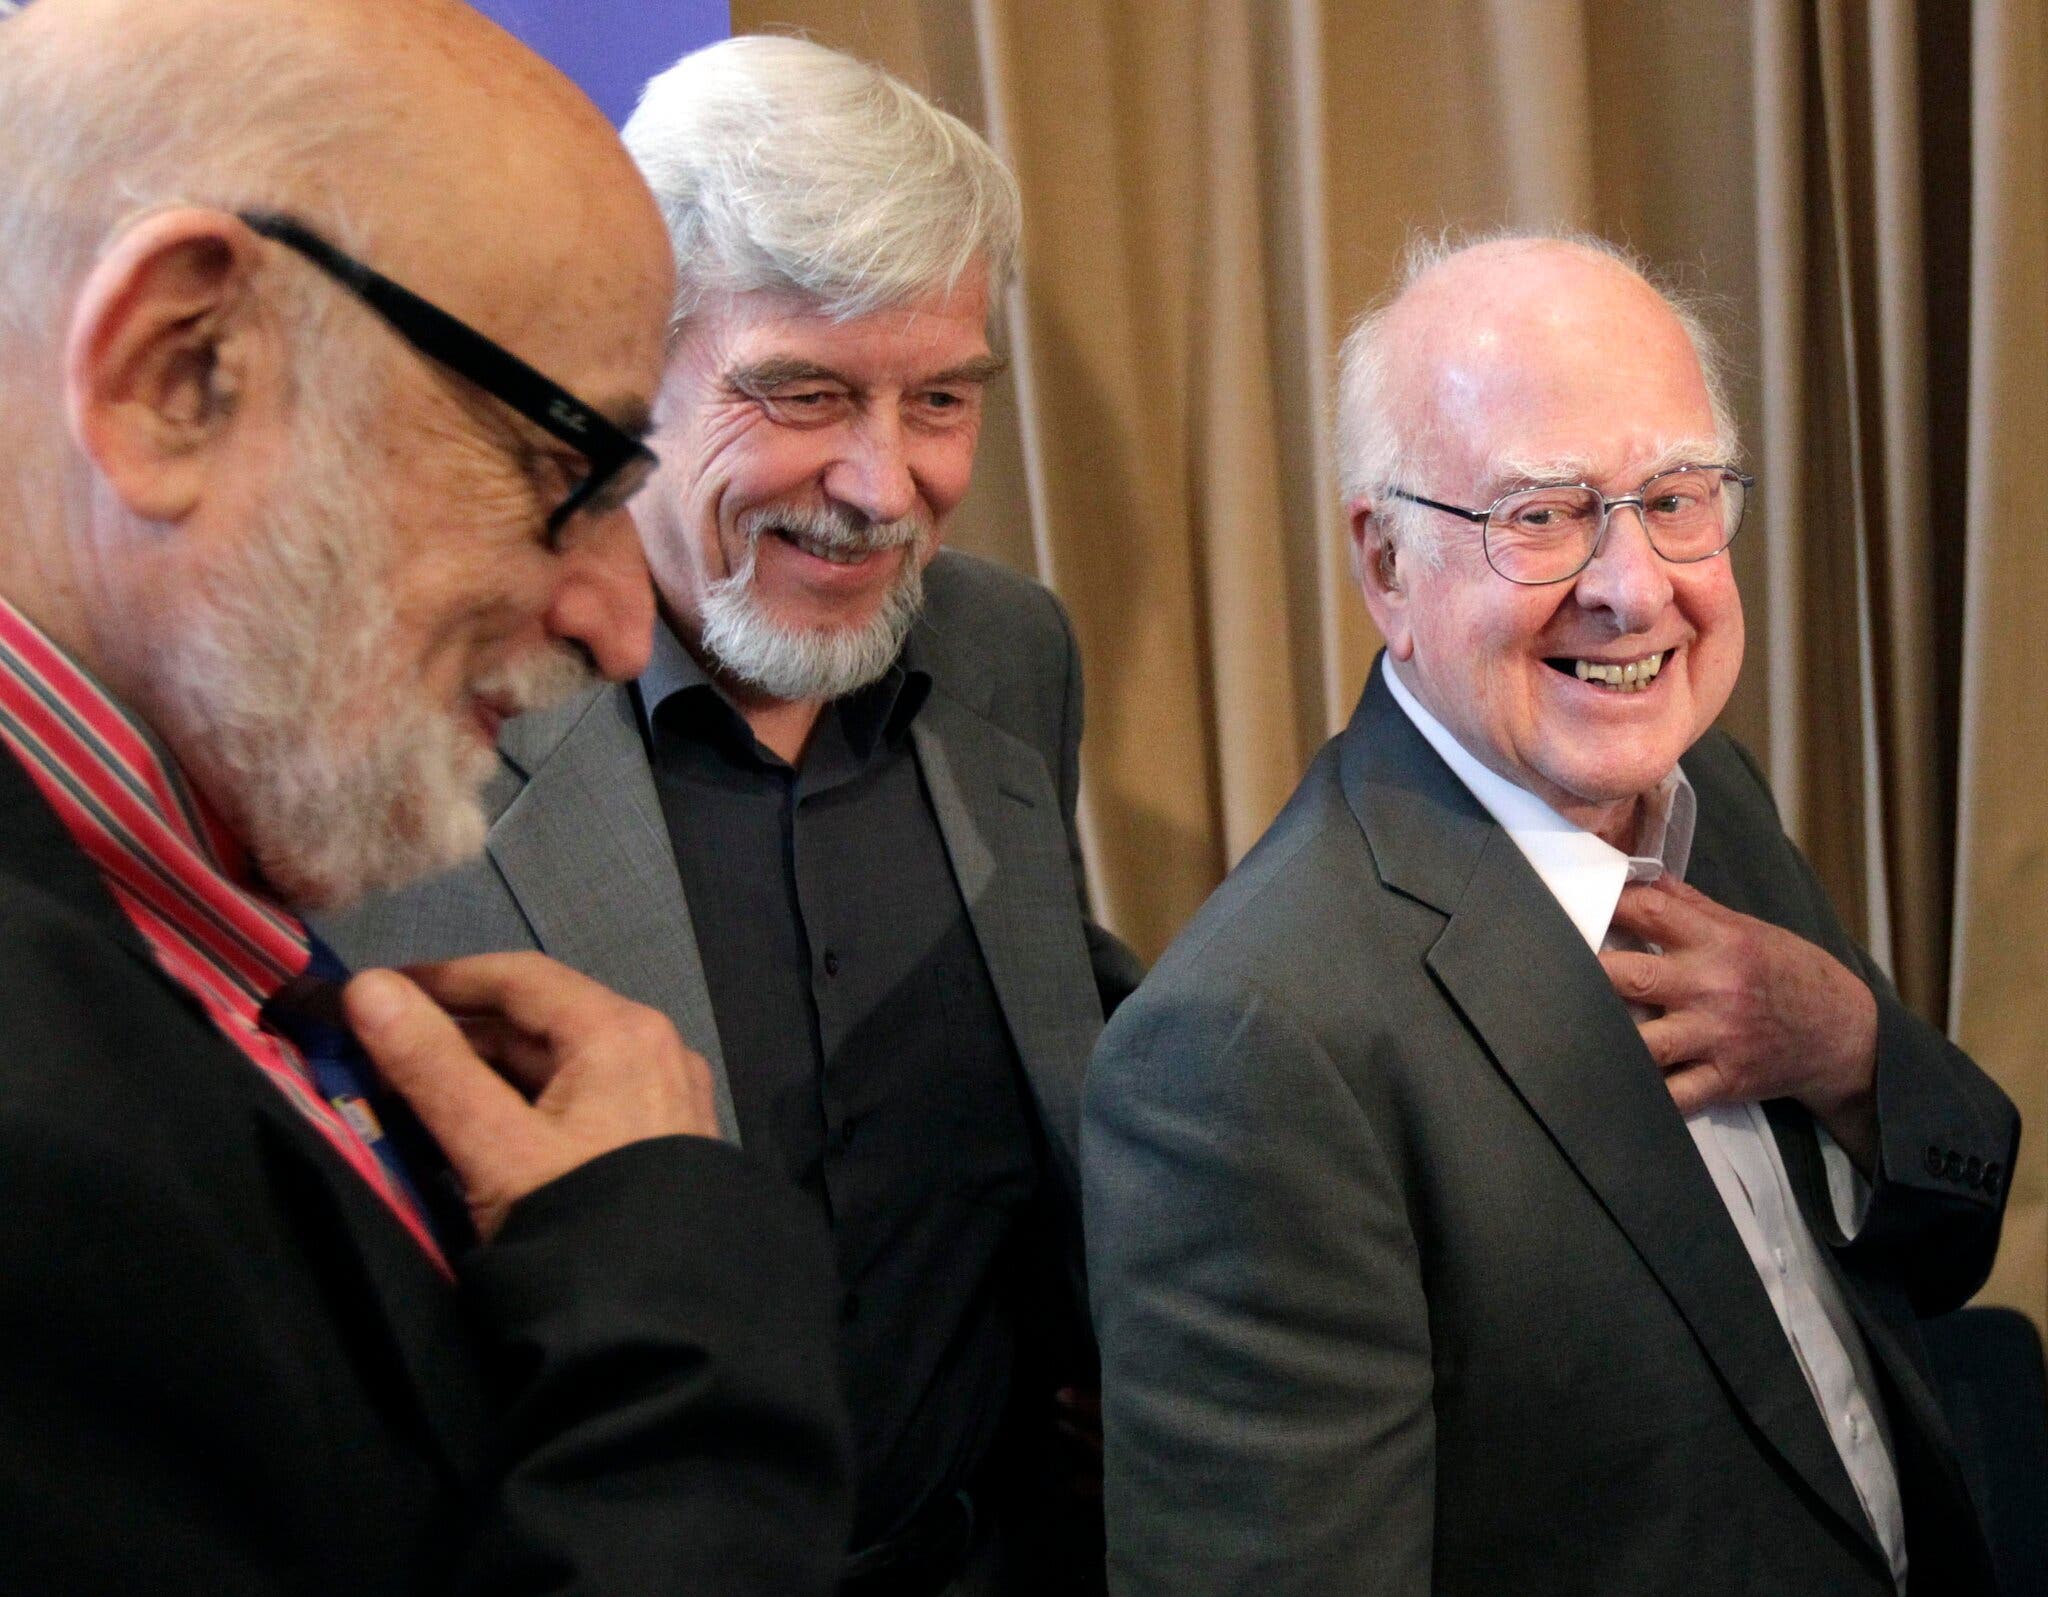  Доктор Хиггс (справа) встретился с бельгийским физиком Франсуа Энглером (слева) в 2012 году в Европейской организации ядерных исследований (ЦЕРН) в Мейрине, Швейцария, недалеко от Женевы. Вместе с ними был Рольф Хойер, генеральный директор ЦЕРН. В следующем году доктор Хиггс и доктор Энглерт разделили Нобелевскую премию по физике.